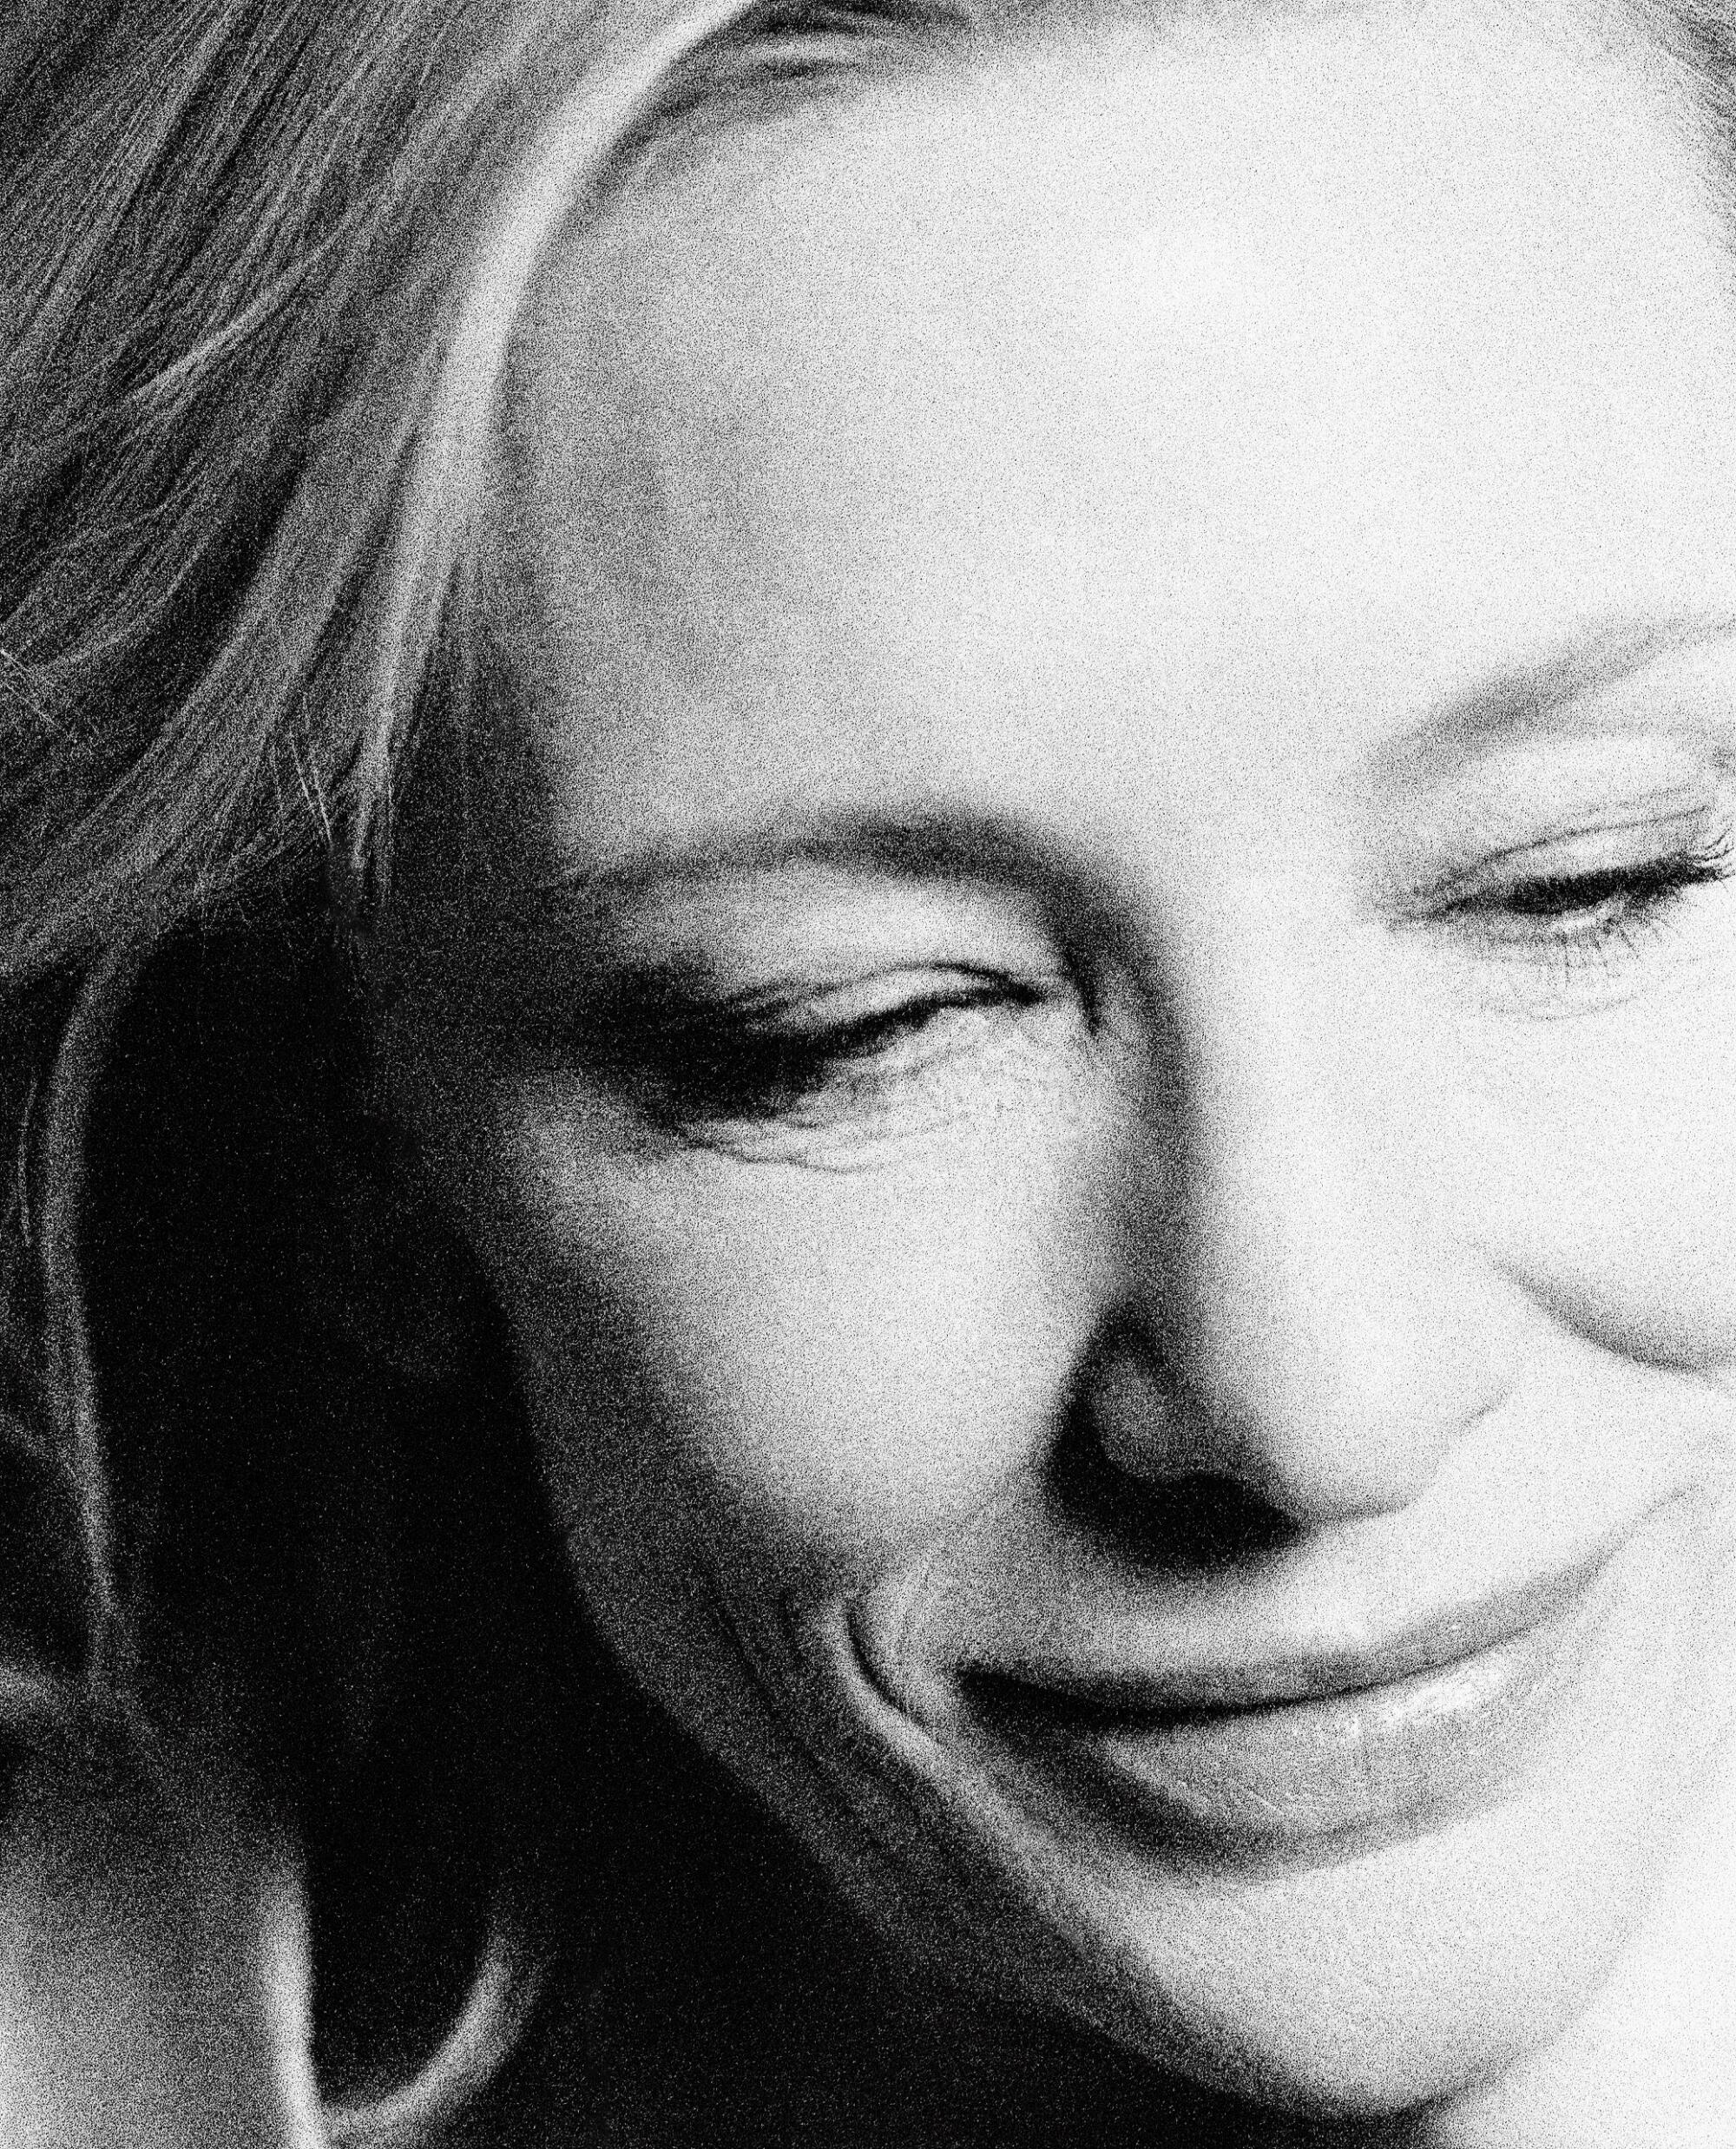 Cate Blanchett Said 'Yes' to 'Blue Jasmine' Before Reading Script!, Cate  Blanchett